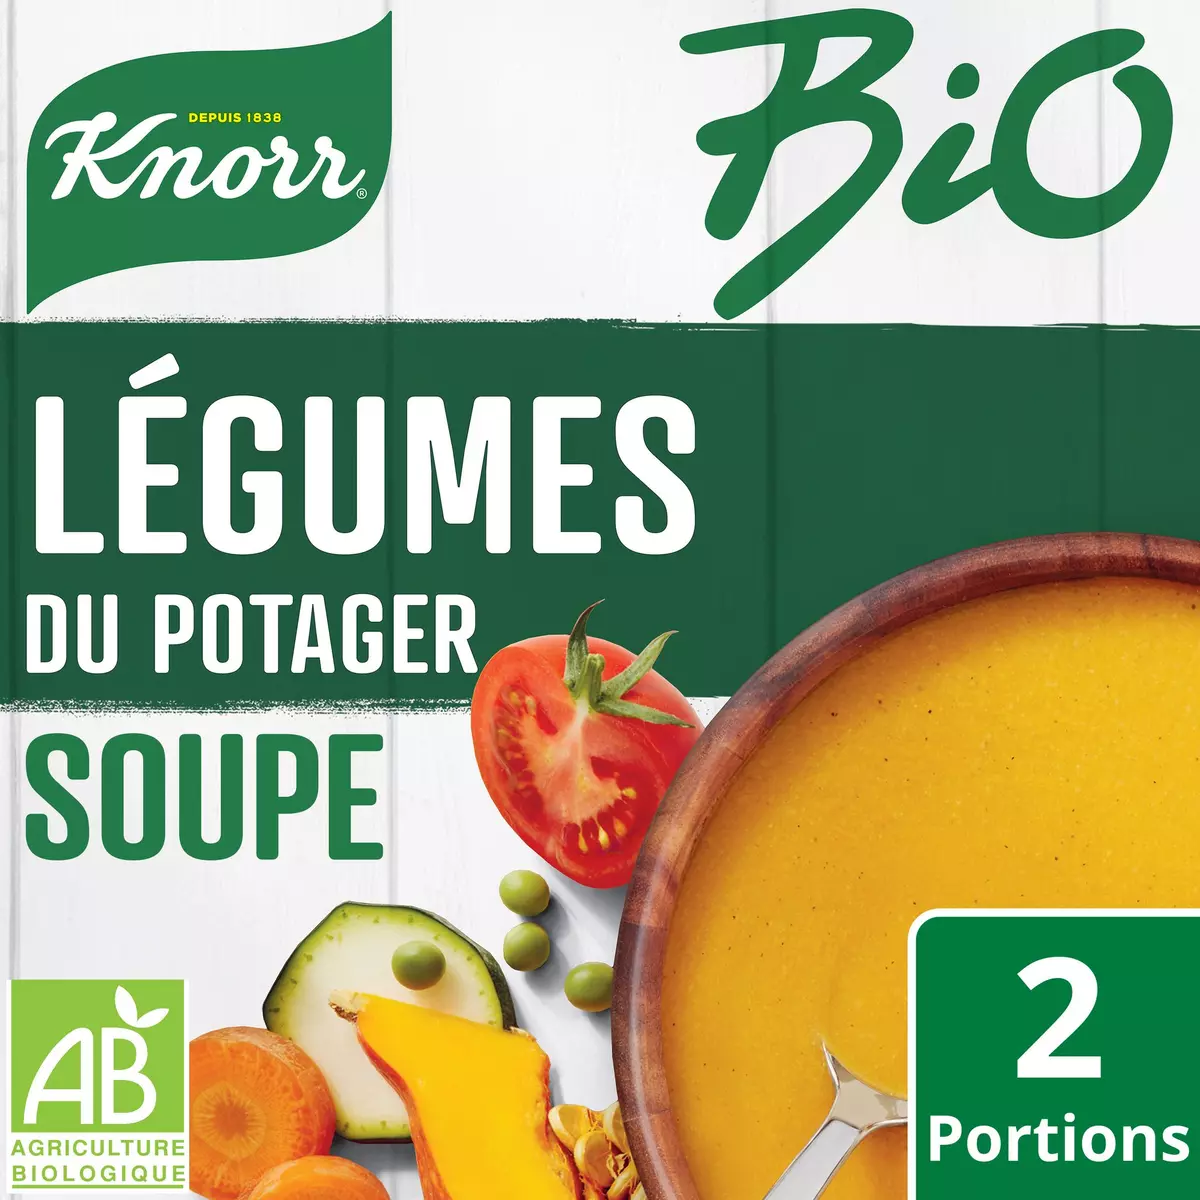 Soupe passée aux 9 légumes Knorr - 105g